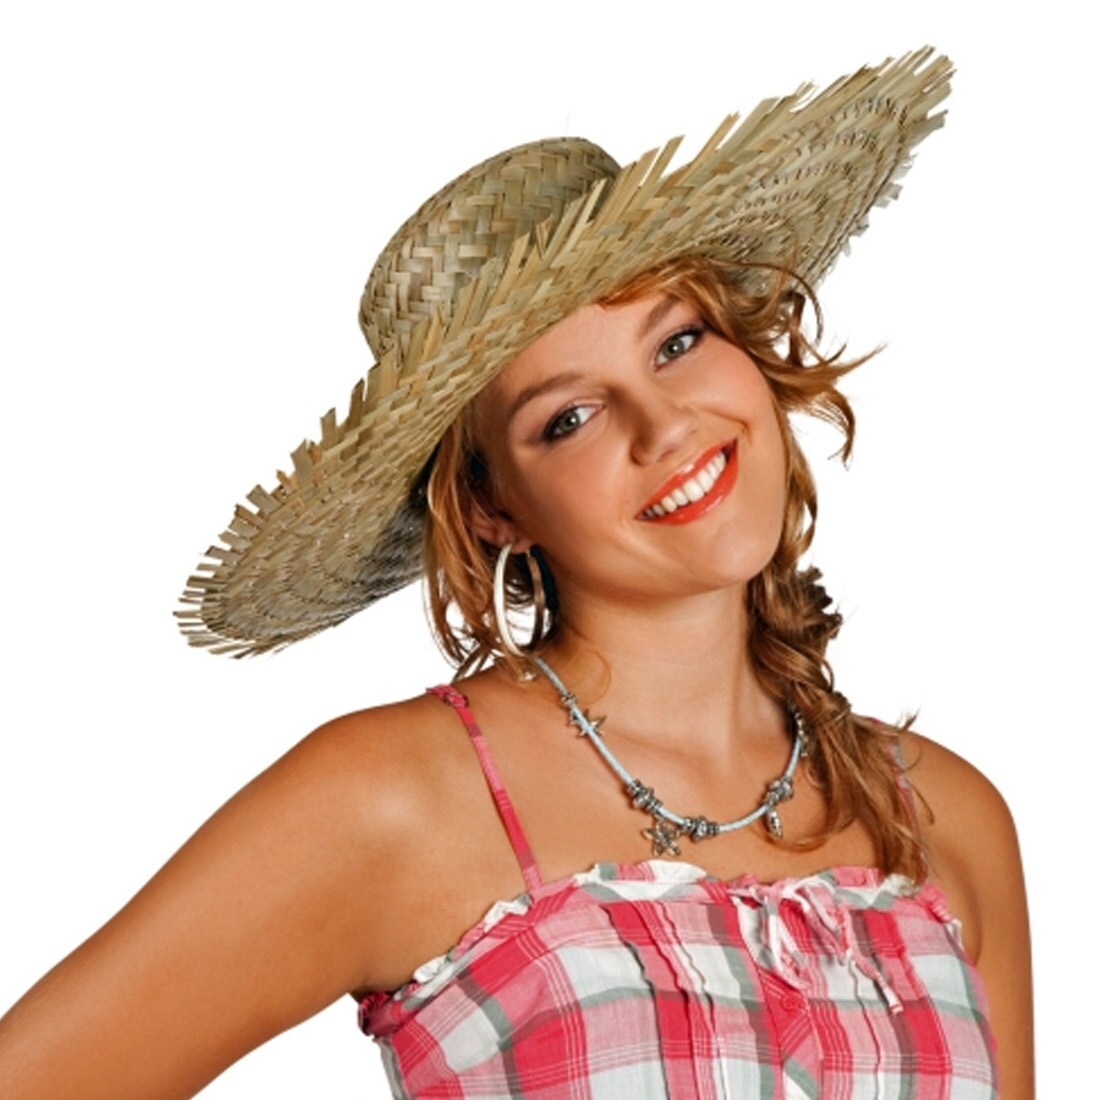 Партия шляп. Девушка в соломенной шляпе. Соломенная шляпа и костюм. Наряды с соломенной шляпой. Нарядные девушки в соломенных шляпах.